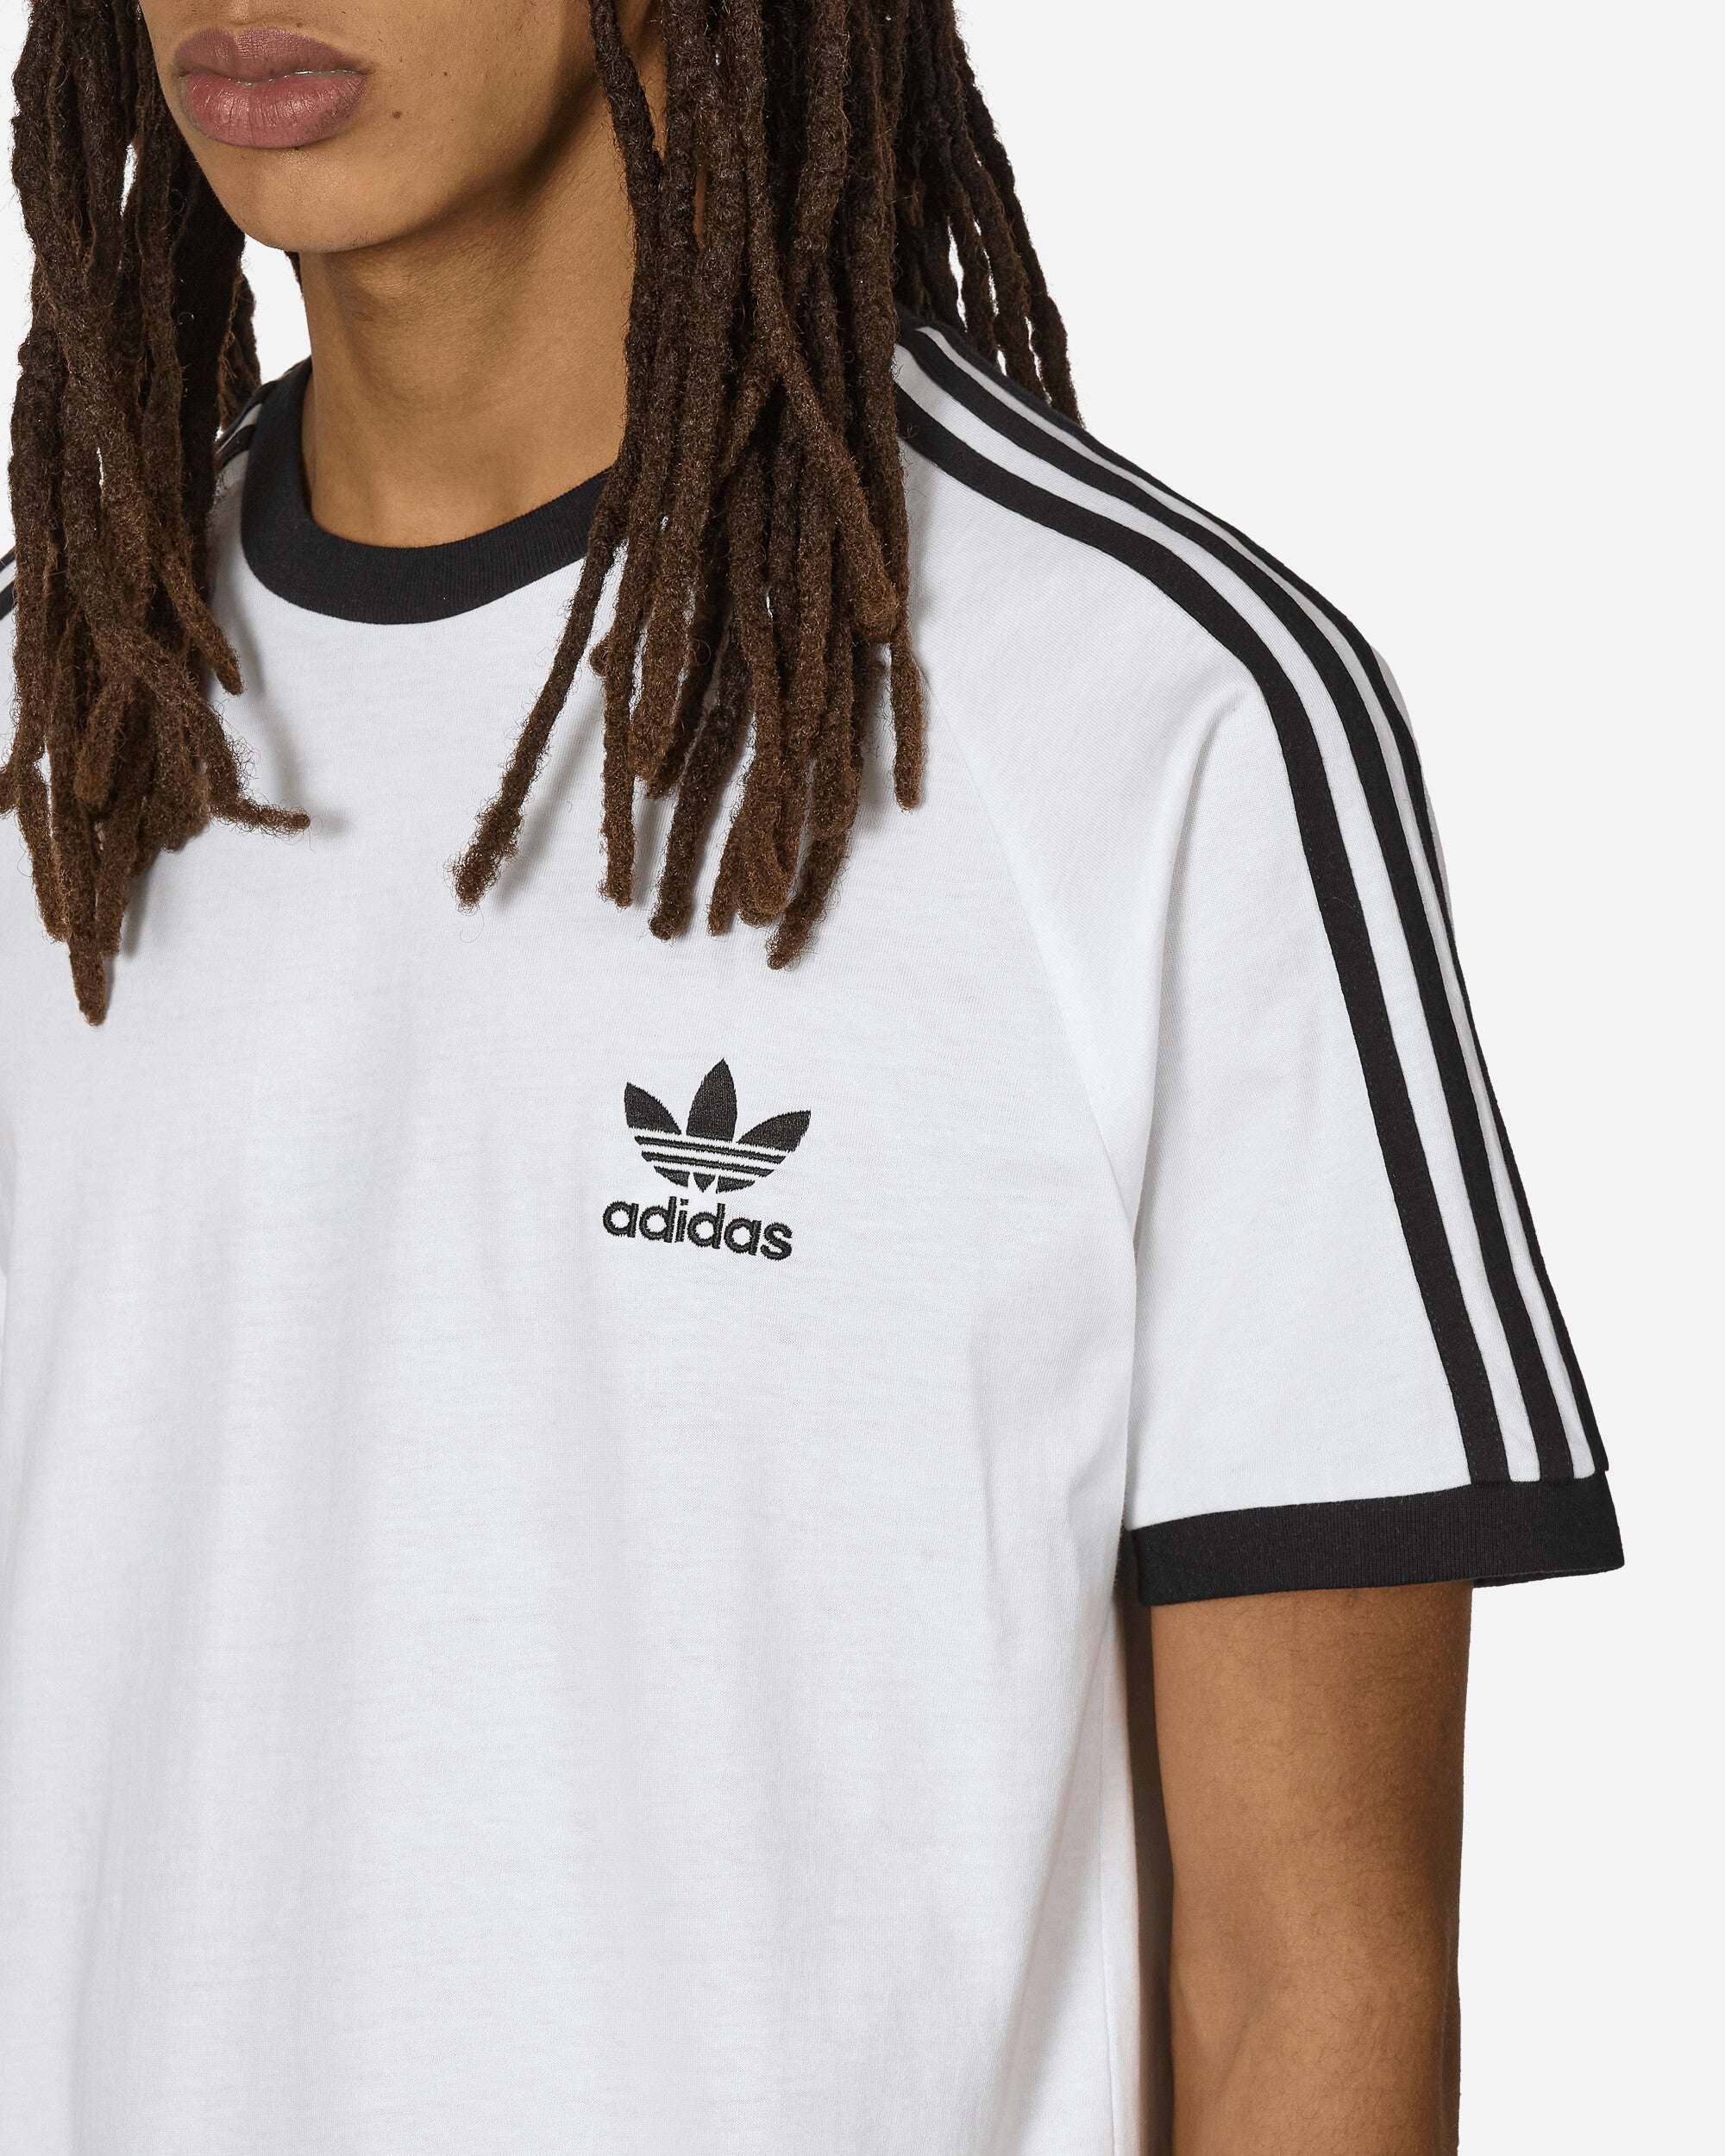 adidas 3-Stripes Tee White T-Shirts Shortsleeve IA4846 001